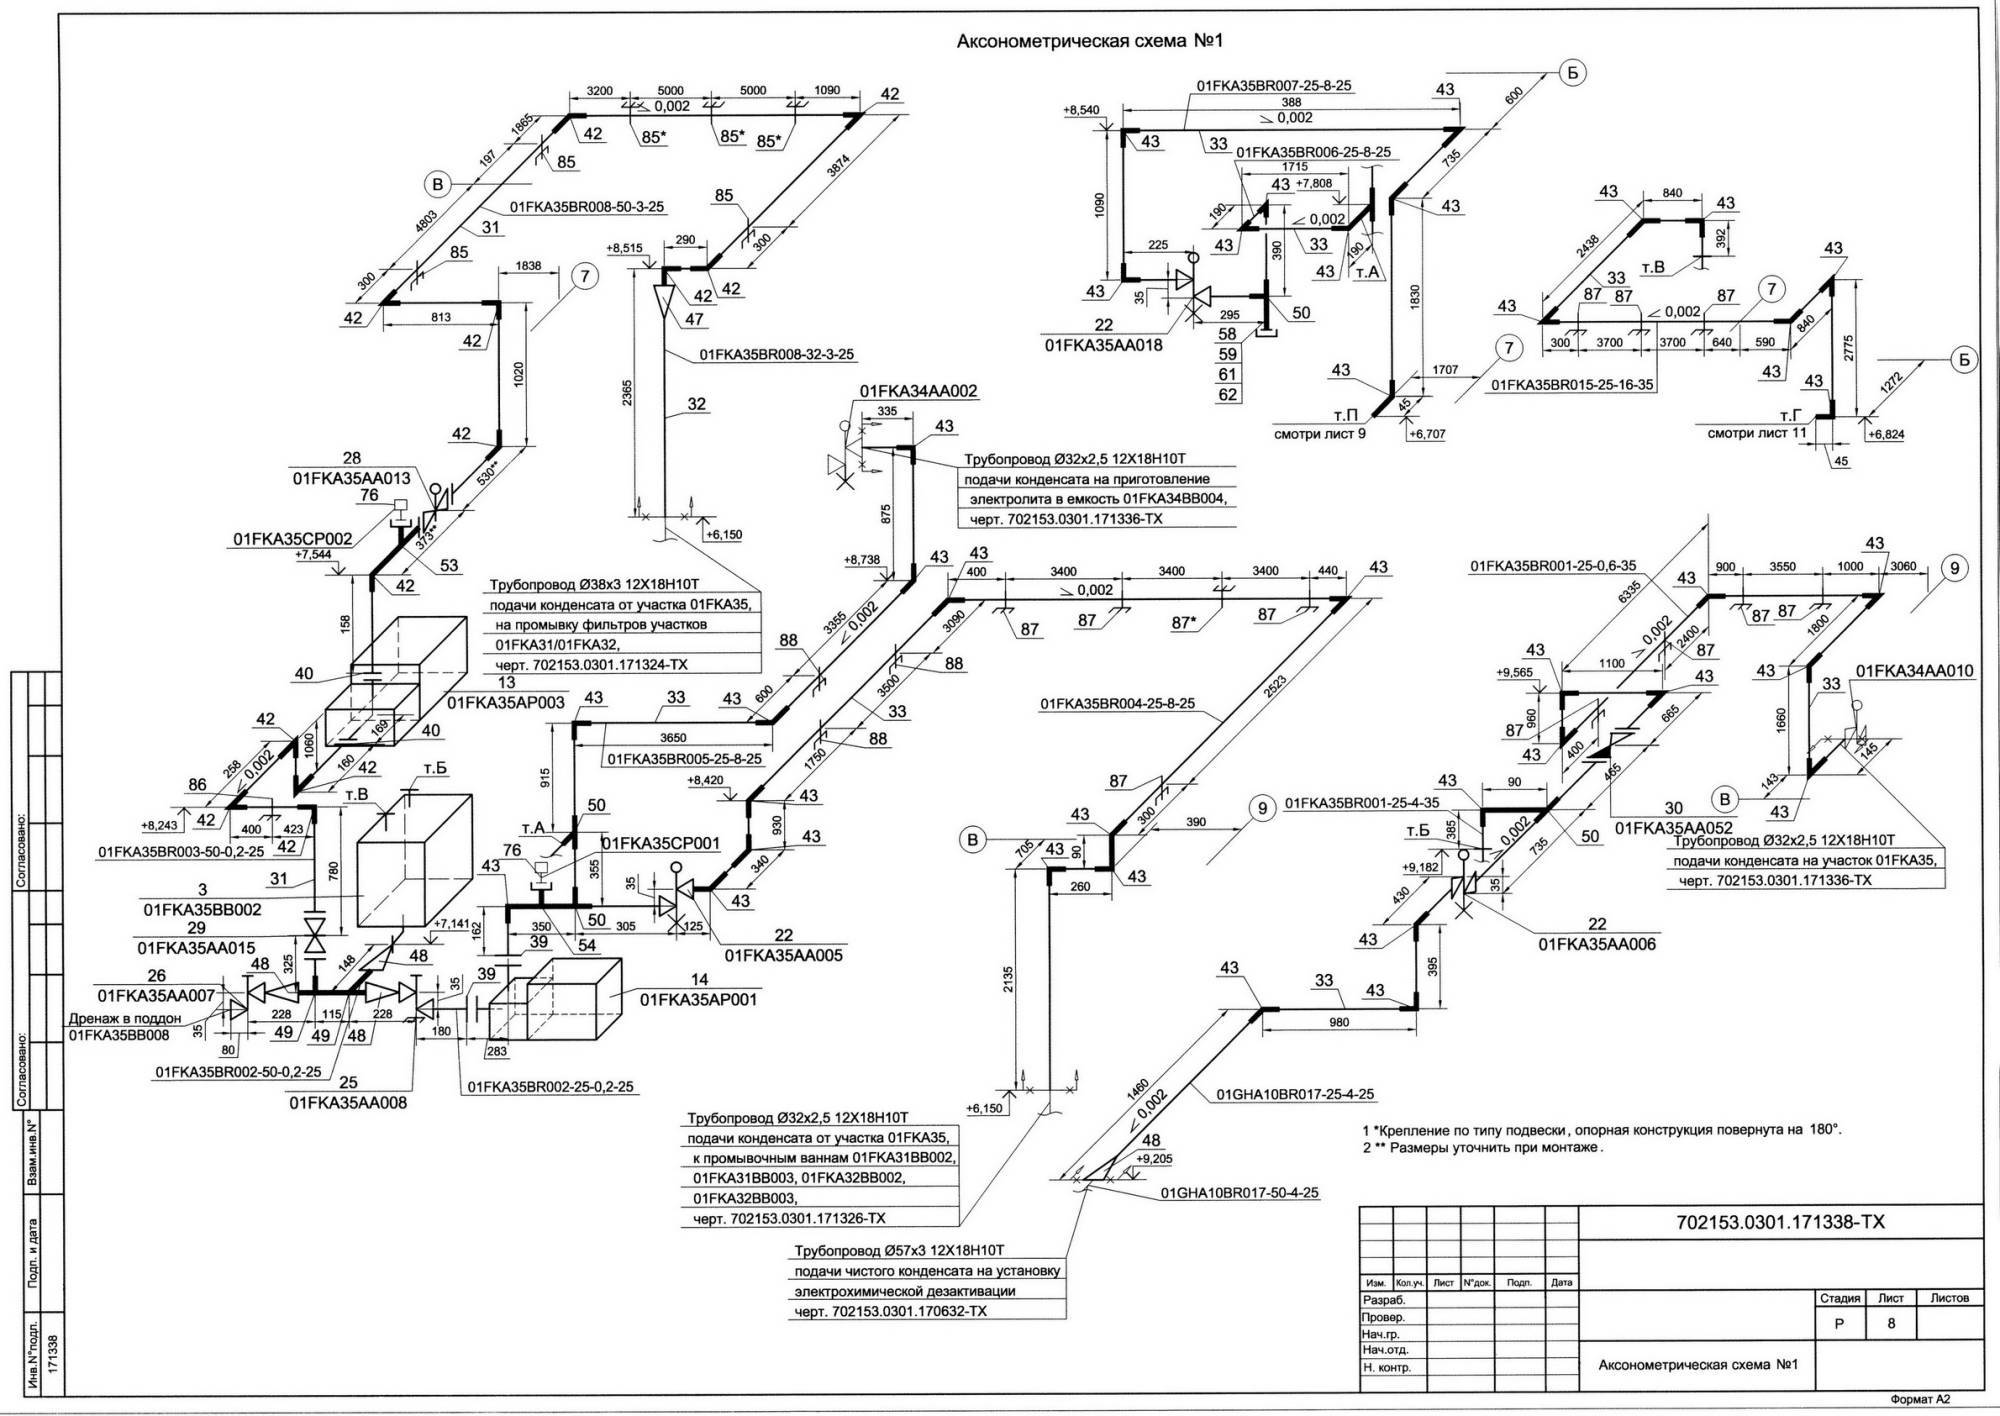 Аксонометрическая схема отопления и вентиляции